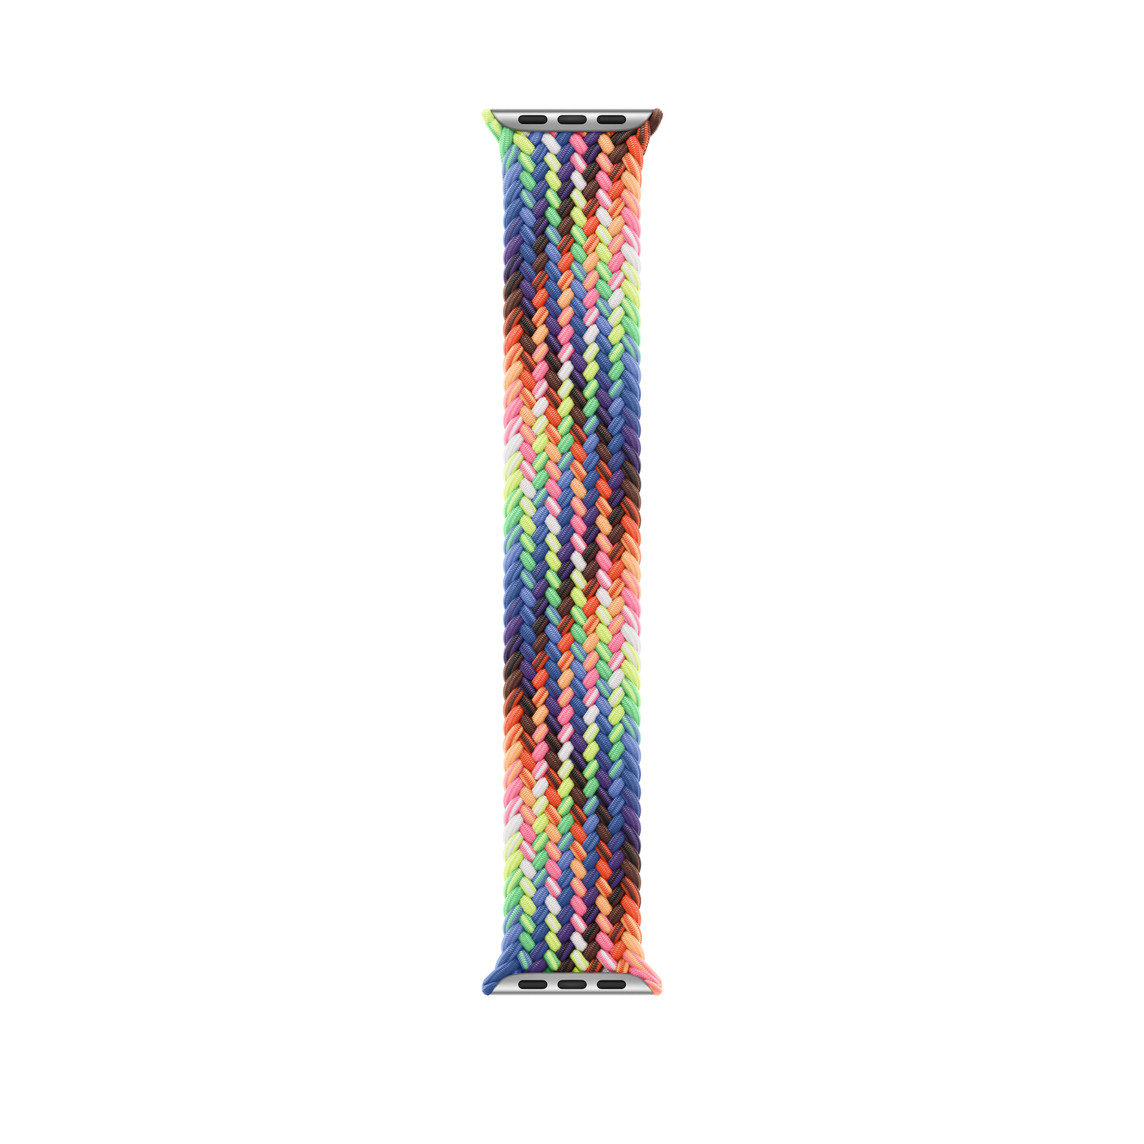 Geflochtenes Solo Loop Pride Edition Armband, in Neonfarben gewobene Fäden, die von der leuchtenden Pride Regenbogenflagge inspiriert sind, ohne Schnallen oder Schließen